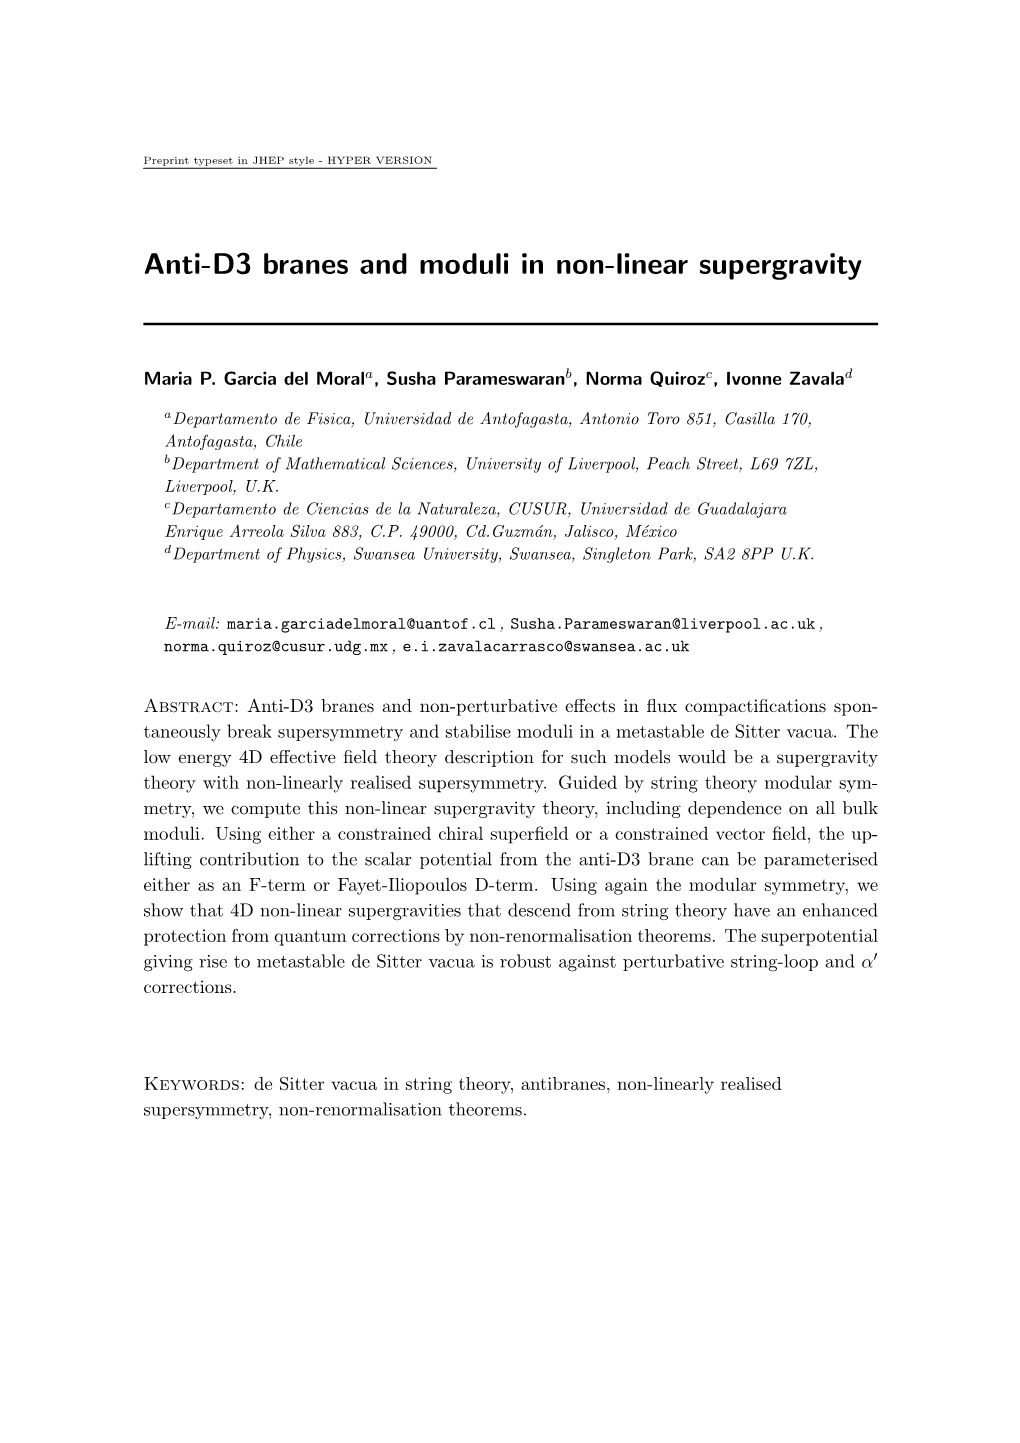 Anti-D3 Branes and Moduli in Non-Linear Supergravity